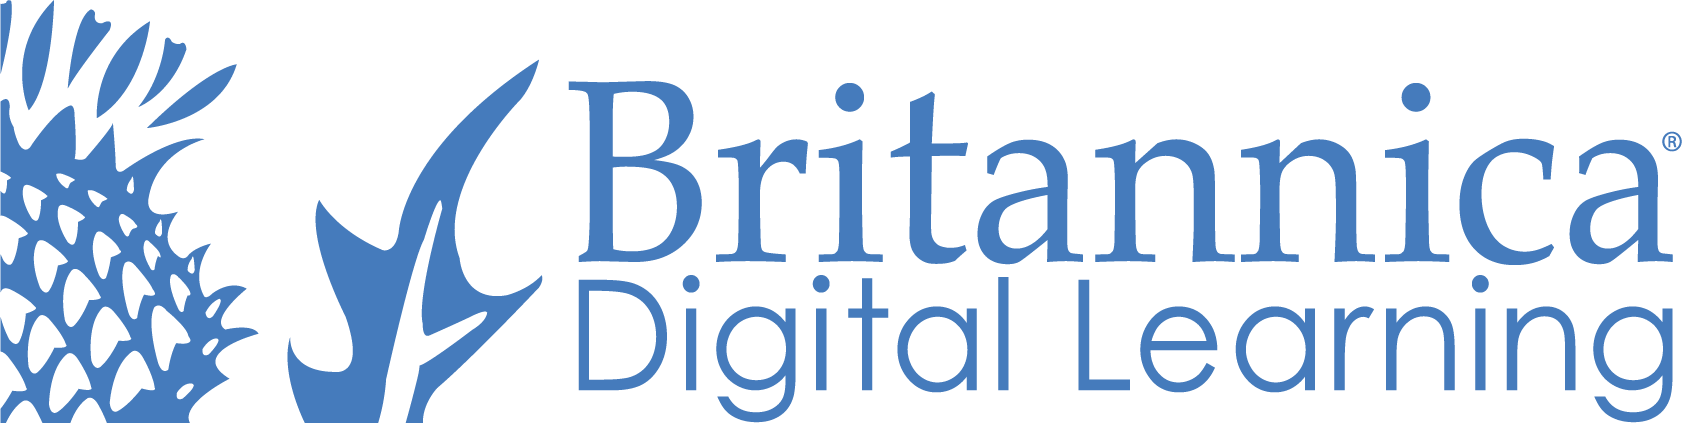 Encyclopaedia Britannica (UK) Ltd